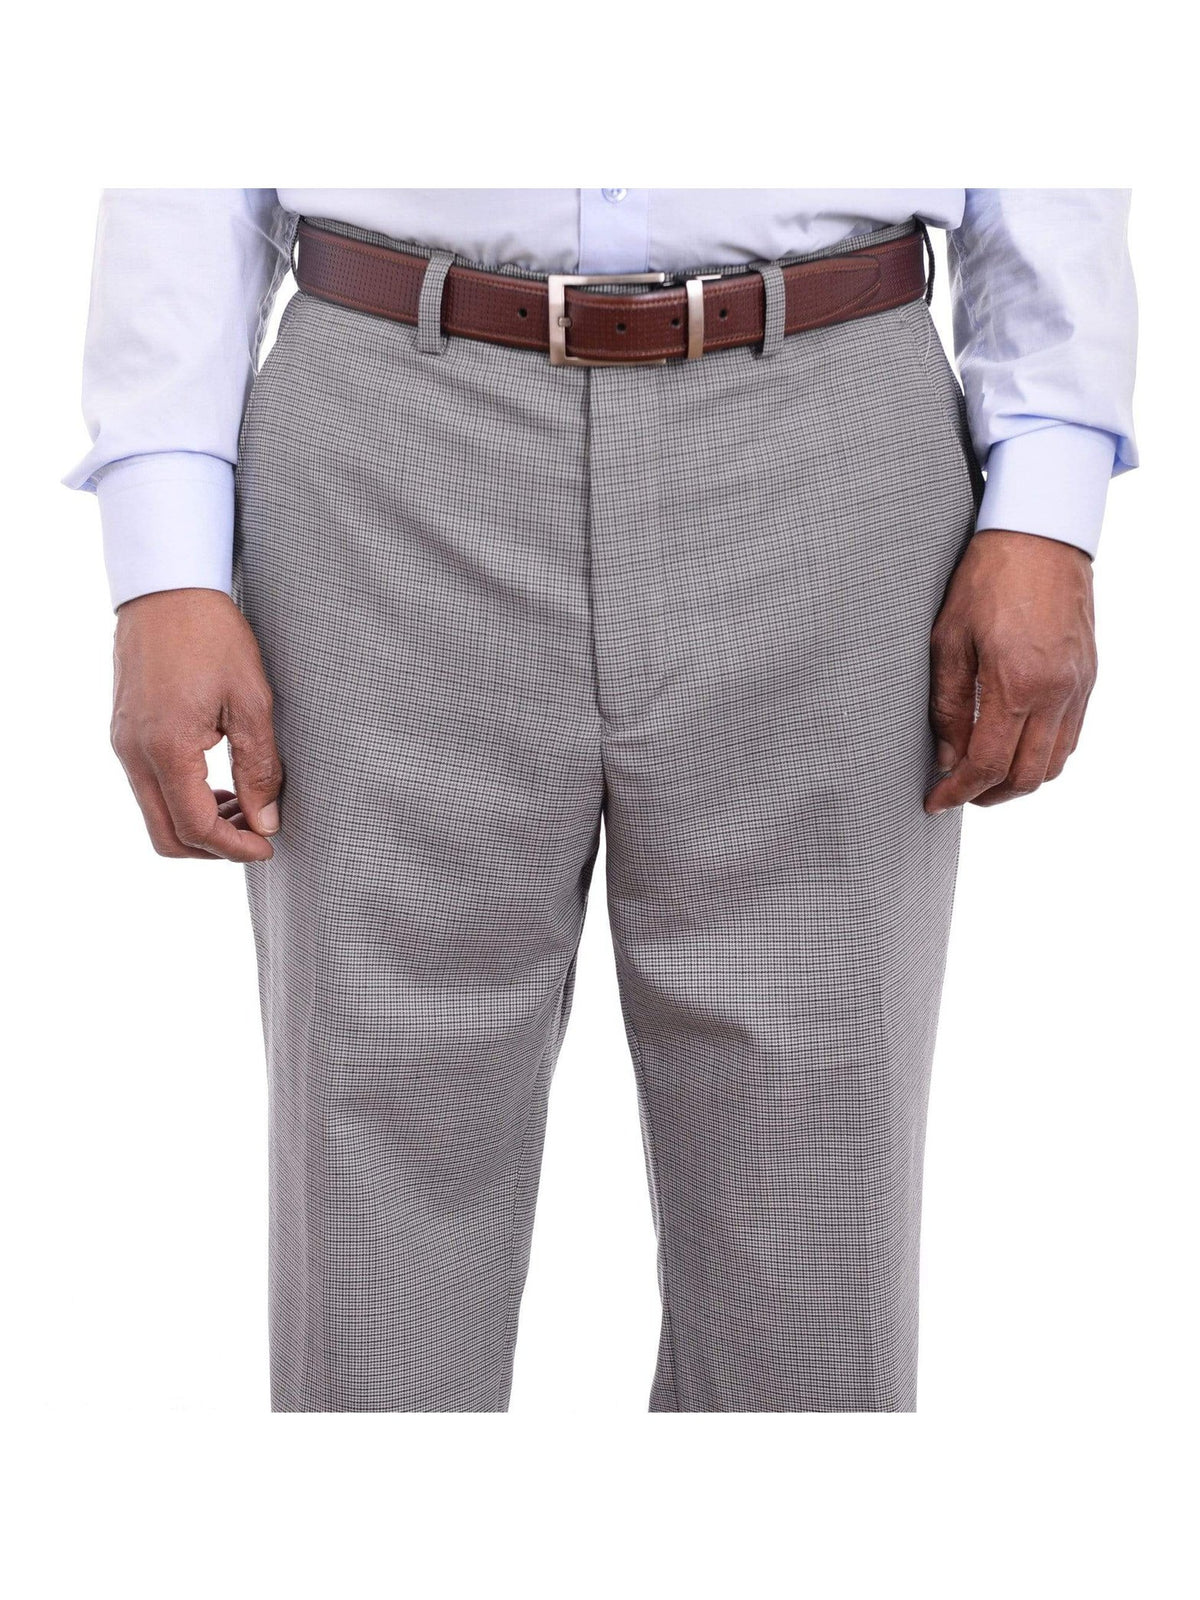 Ralph Lauren Classic Fit Gray Blue Mini Check Flat Front Wool Dress Pants - The Suit Depot